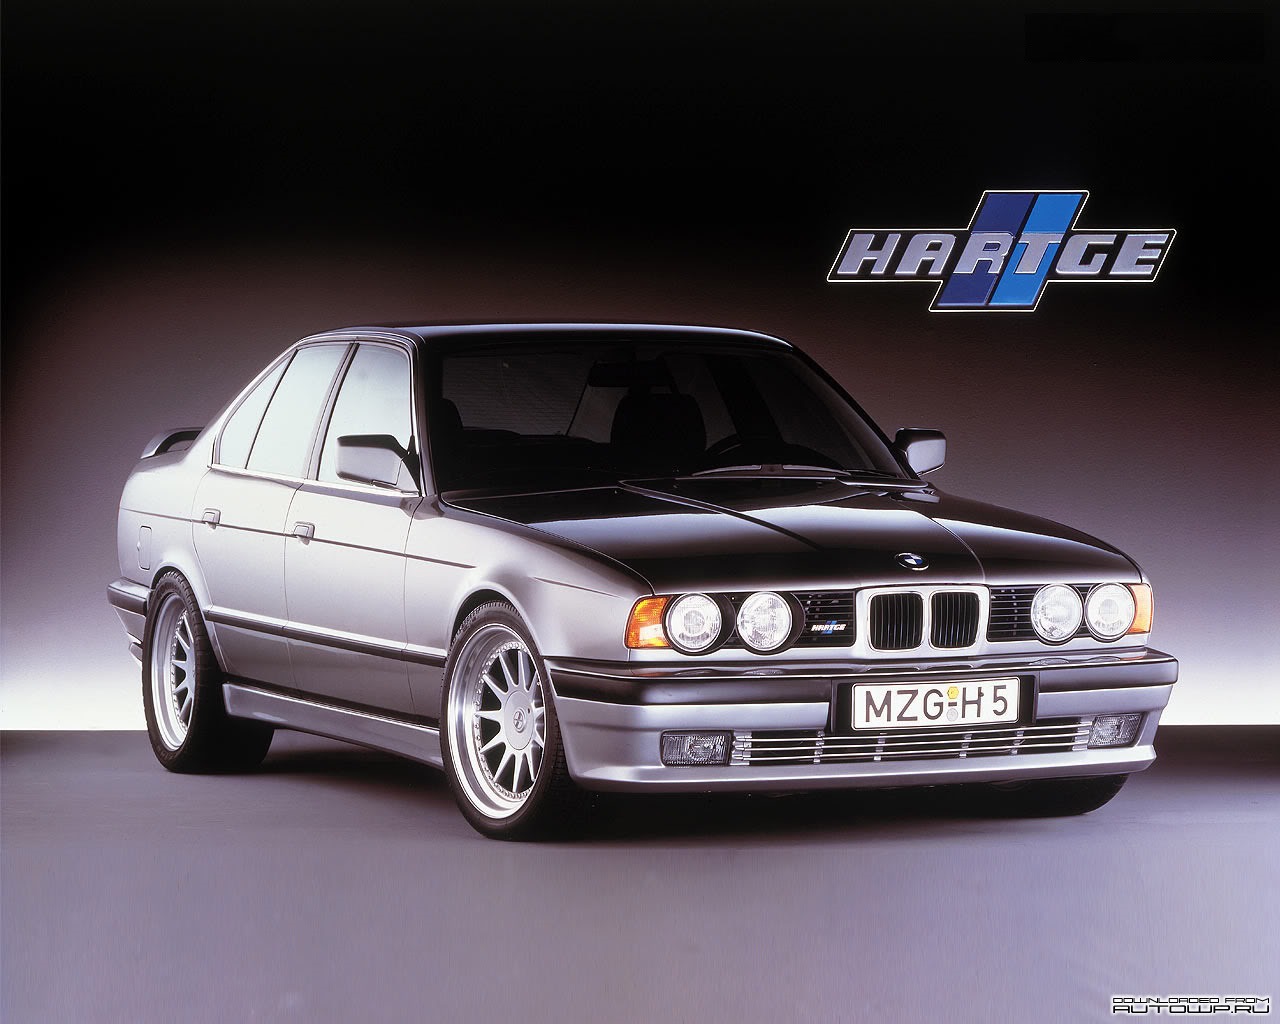 Бмв б н. BMW e34 Hartge. BMW e34 Hartge h5. BMW e34 Hartge h5 6.0. BMW m5 e34 Hartge.